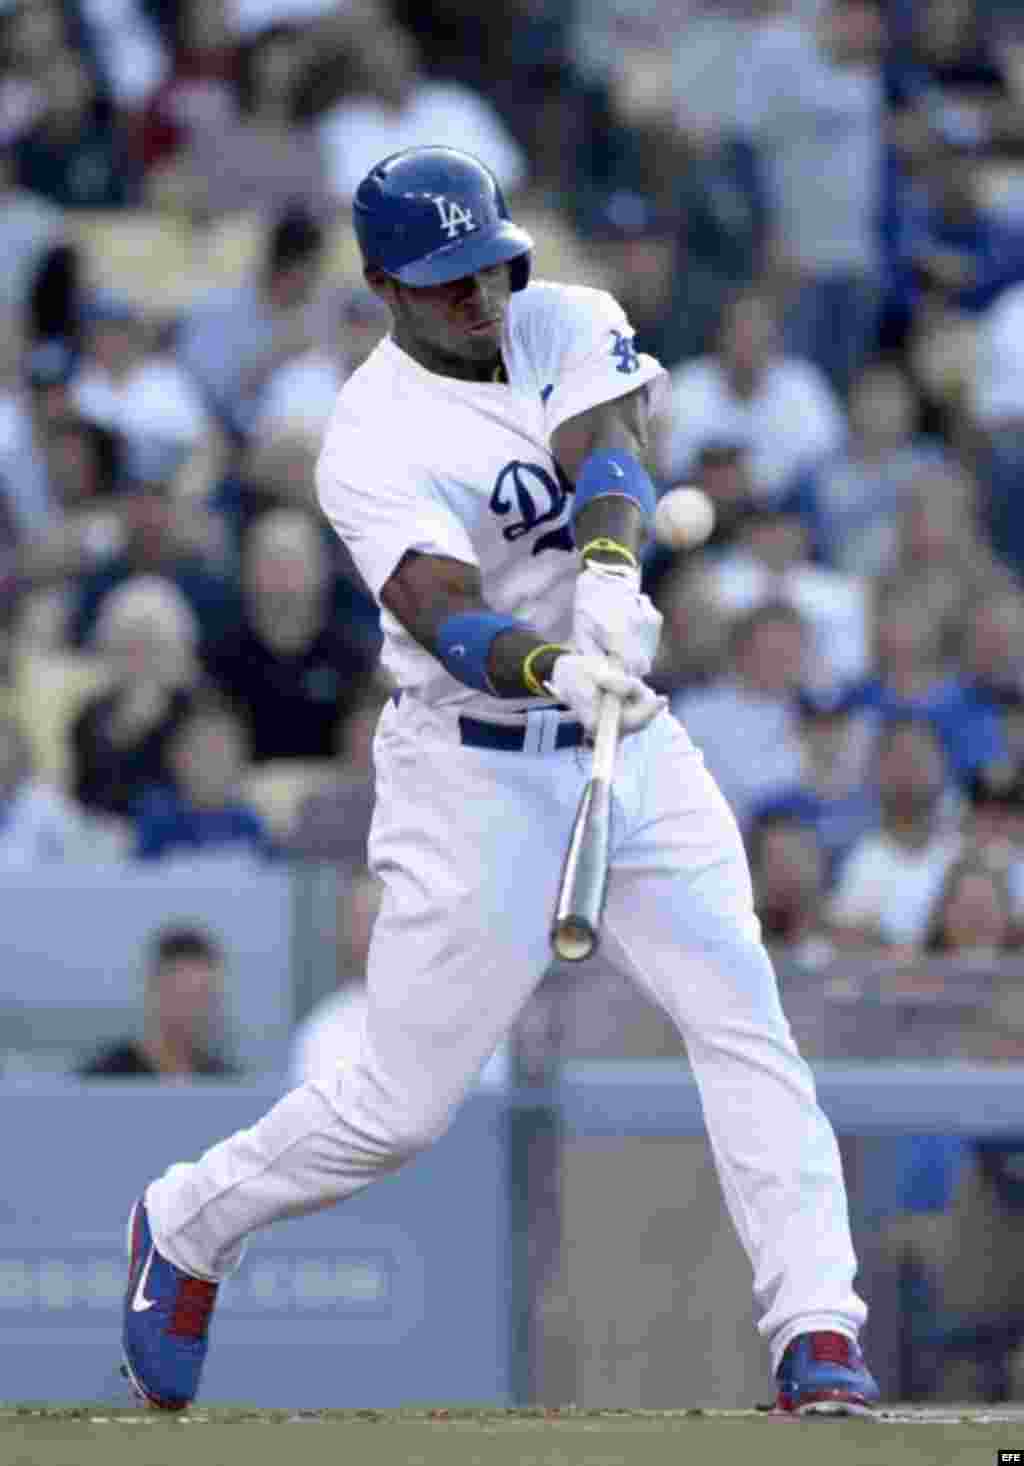 El jardinero derecho de los Dodgers de Los Ángeles, Yasiel Puig (Cienfuegos, 1990), ha bateado para .438 &nbsp;(7 imparables en 16 turnos) en los últimos 7 juegos, con 7 impulsadas, 6 anotadas y 2 cuadrangulares. No se ha ponchado y le han otorgado 3 bases por bolas. &nbsp;